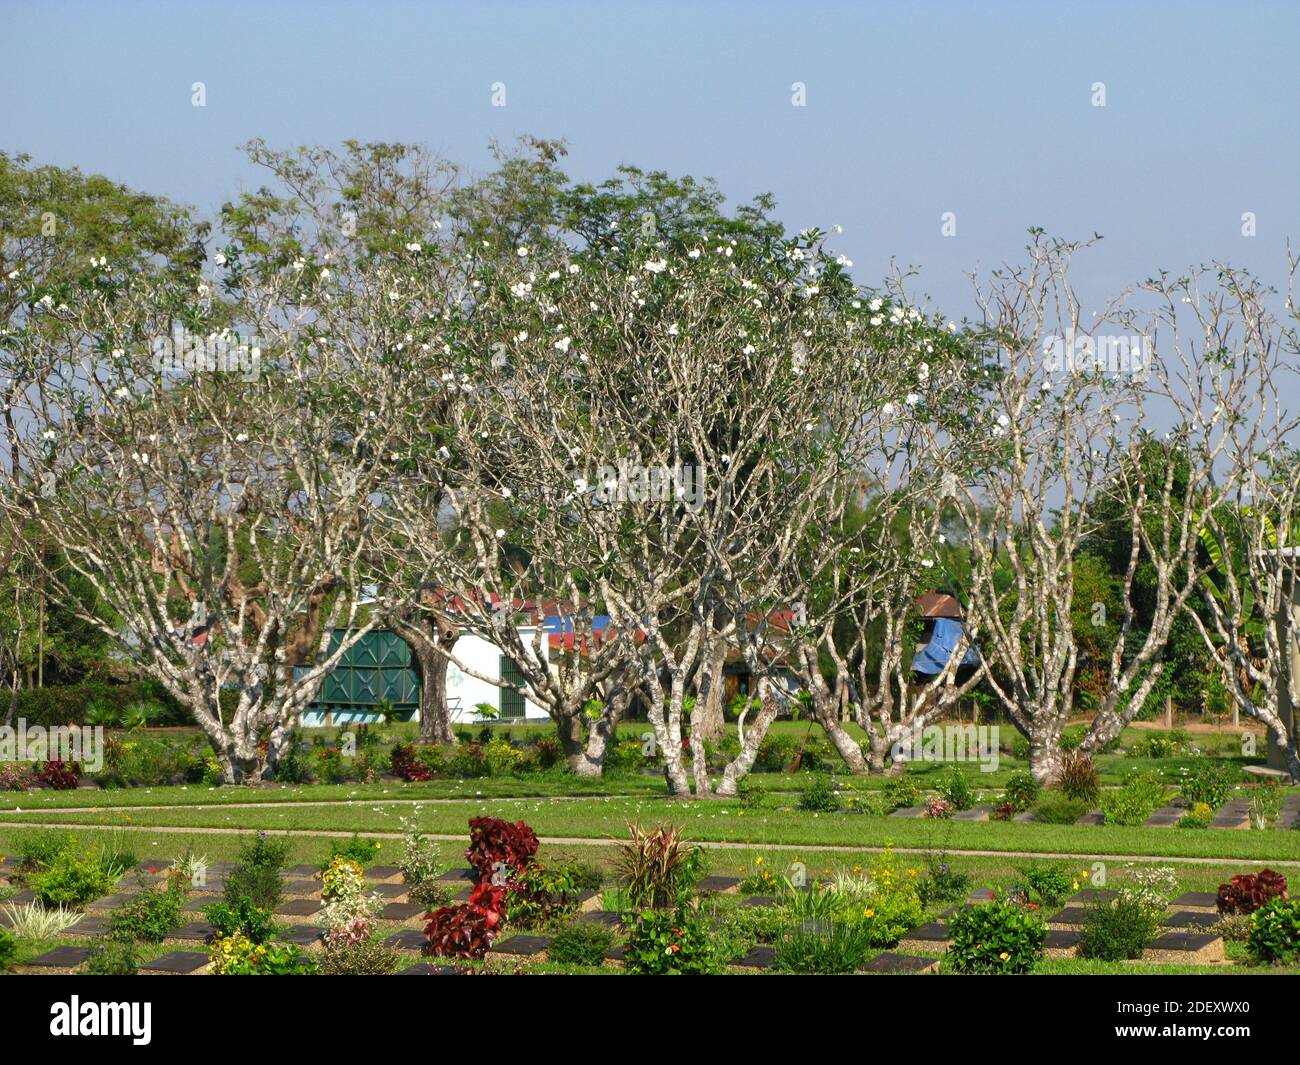 The Taukkyan Cemetery in Bago city, Myanmar Stock Photo